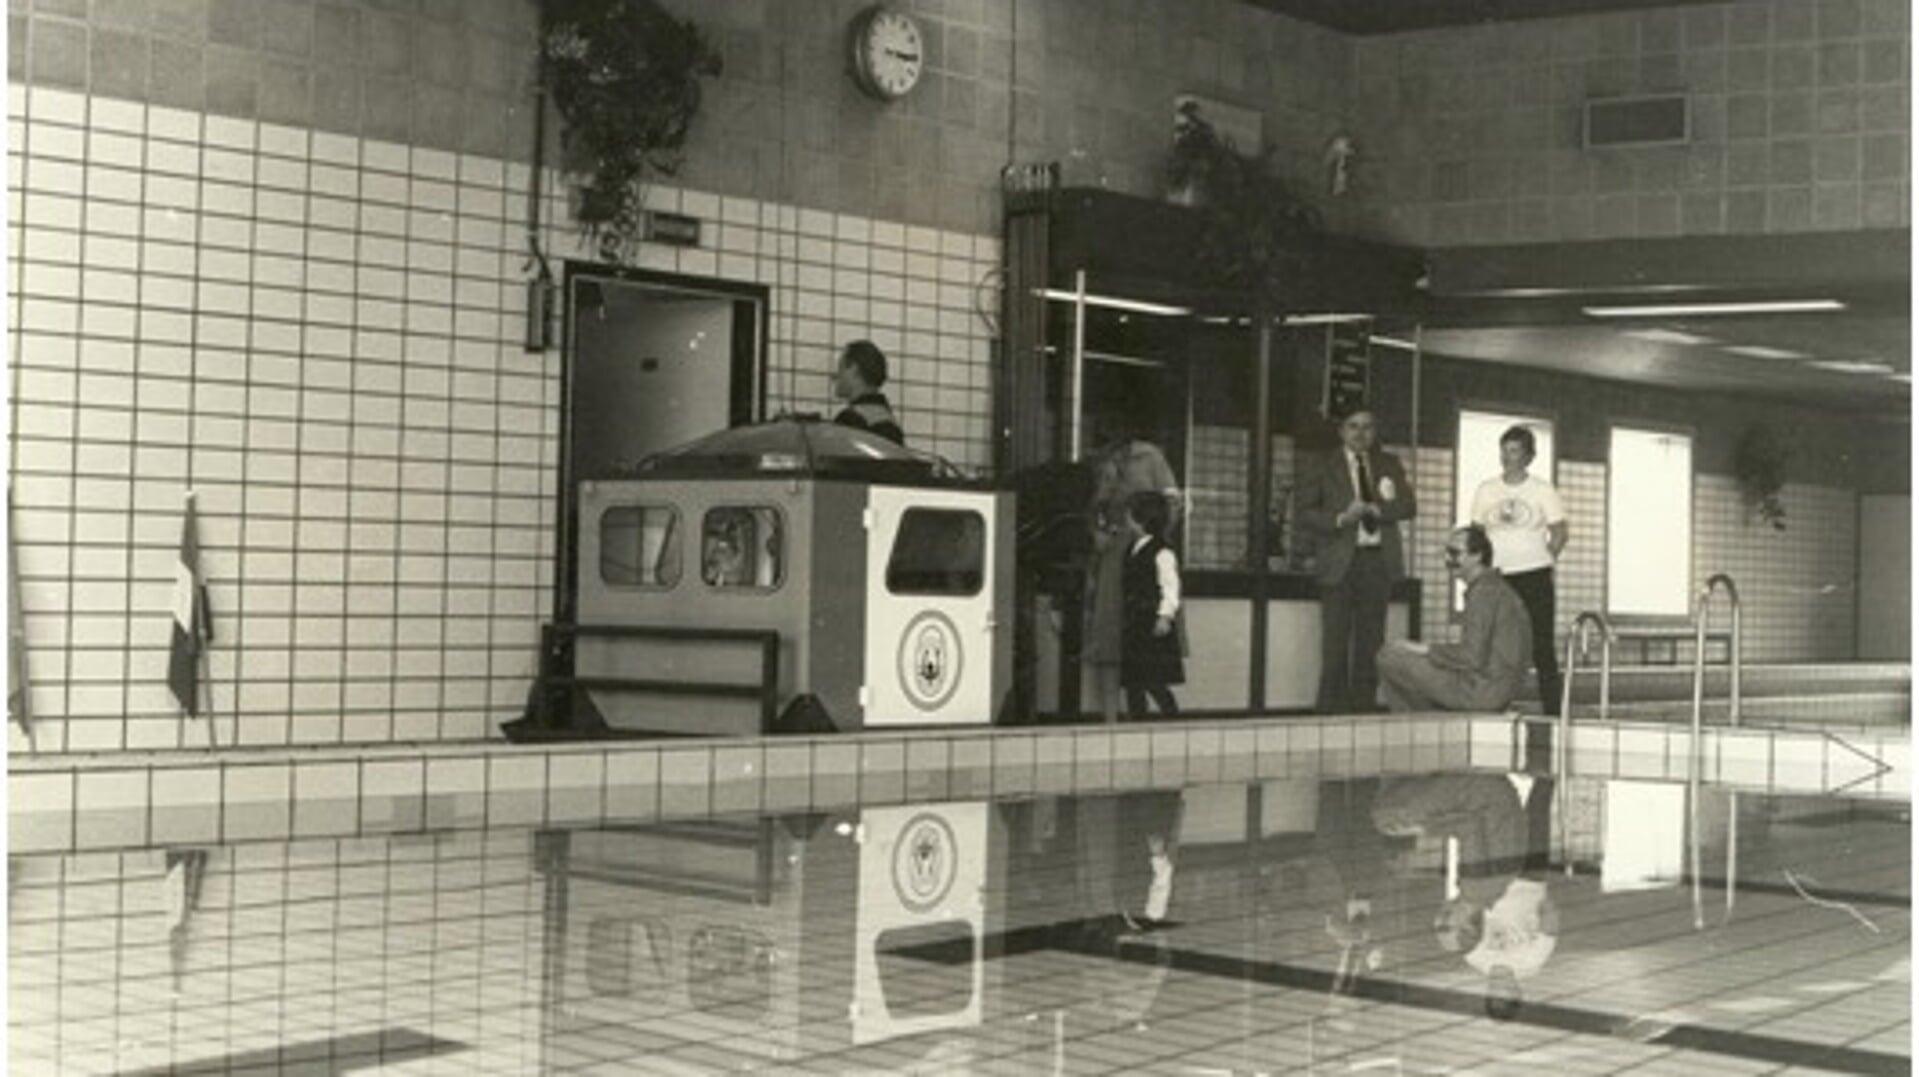 Vrijwilligers van de Reddingsbrigade bouwden in 1982 een onderwatercabine, zodat er lessen konden worden verzorgd met het thema ‘auto te water’. De cabine wordt nog altijd gebruikt.